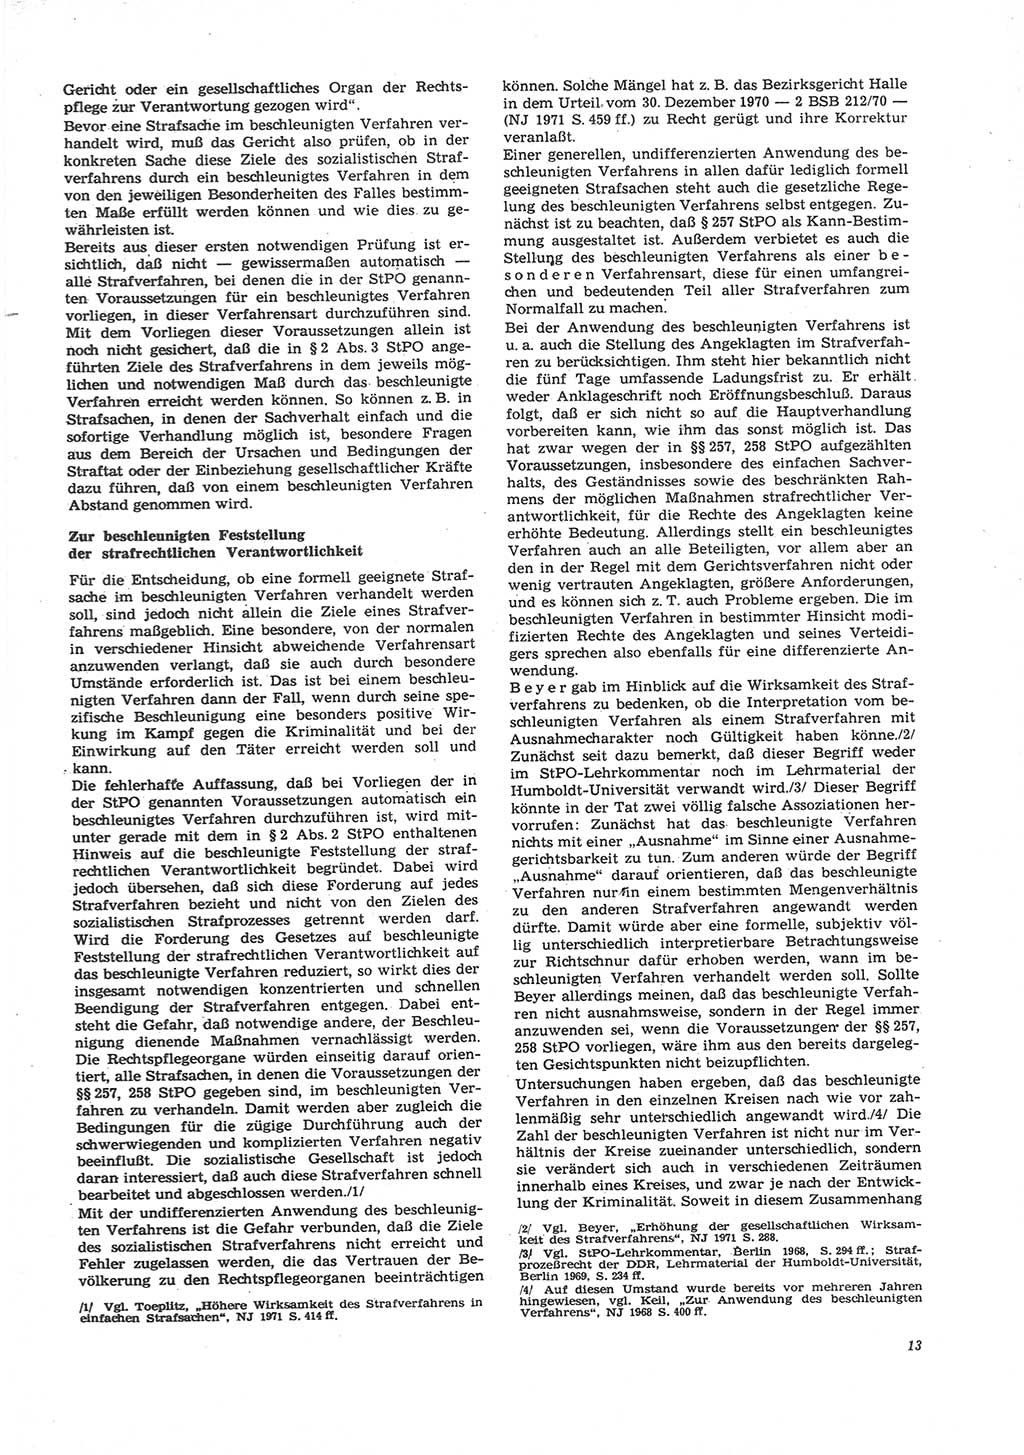 Neue Justiz (NJ), Zeitschrift für Recht und Rechtswissenschaft [Deutsche Demokratische Republik (DDR)], 26. Jahrgang 1972, Seite 13 (NJ DDR 1972, S. 13)